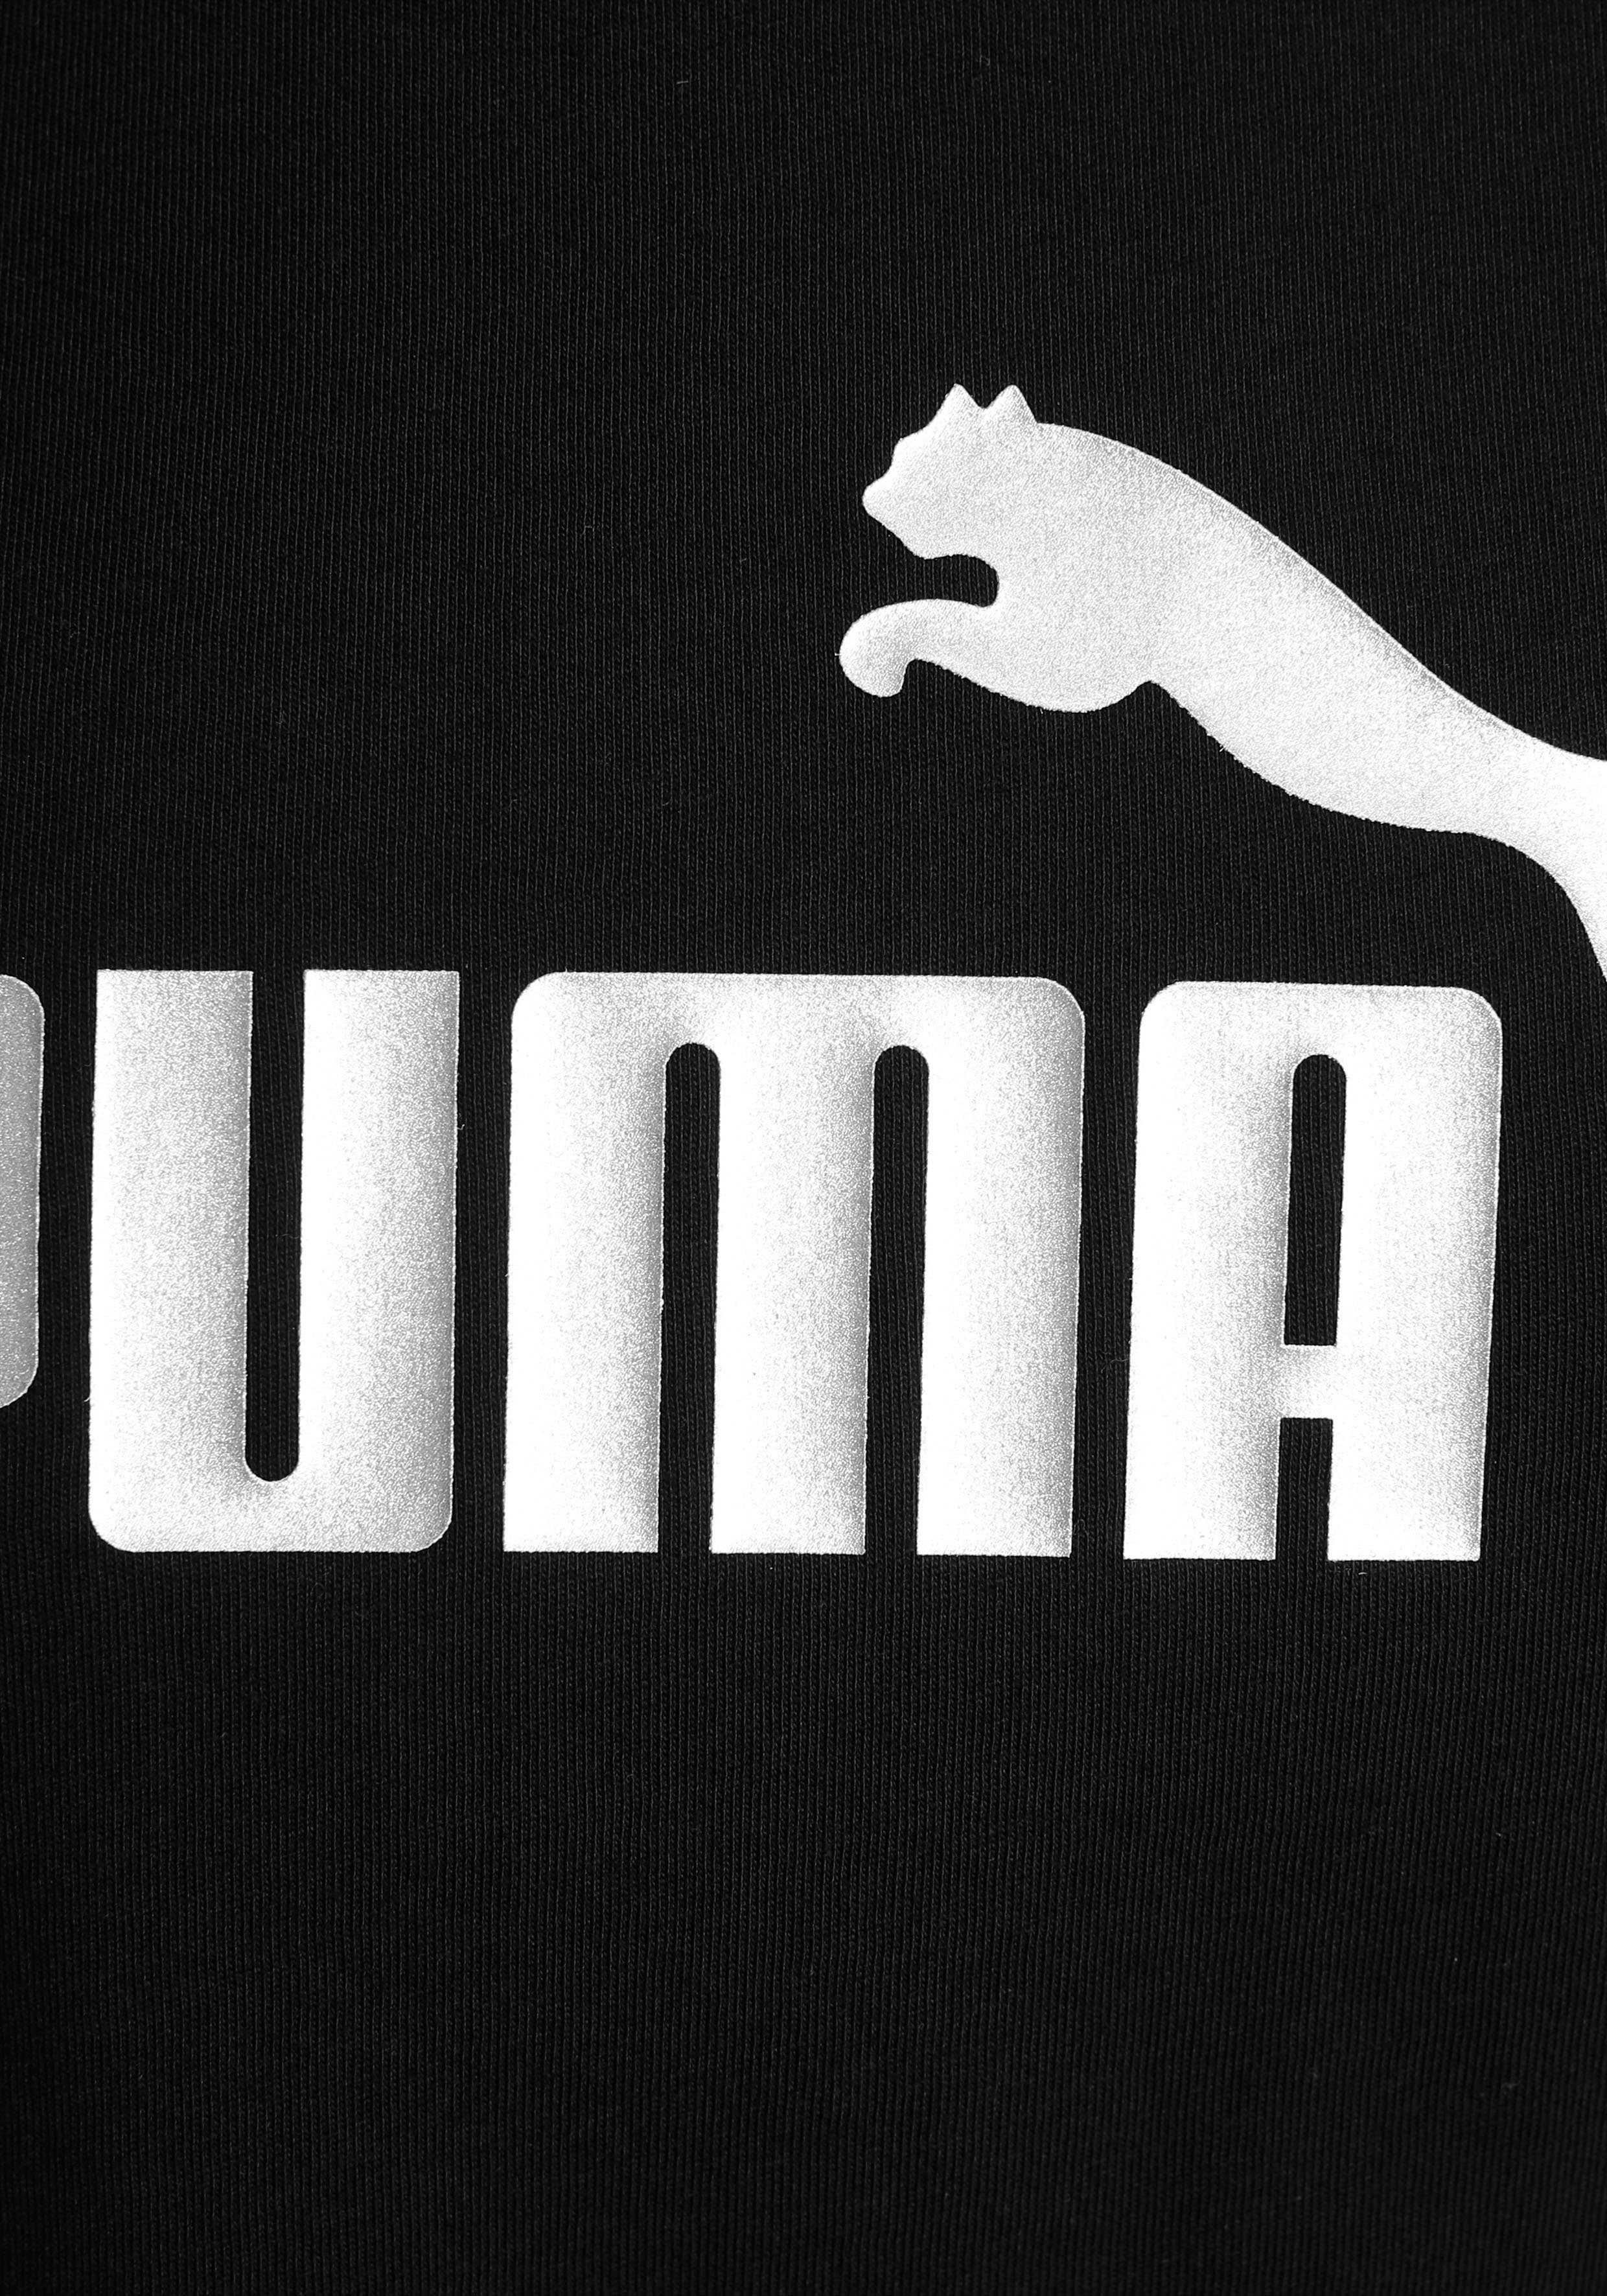 PUMA T-Shirt ESS+ - Logo Knotted Kinder schwarz für Tee